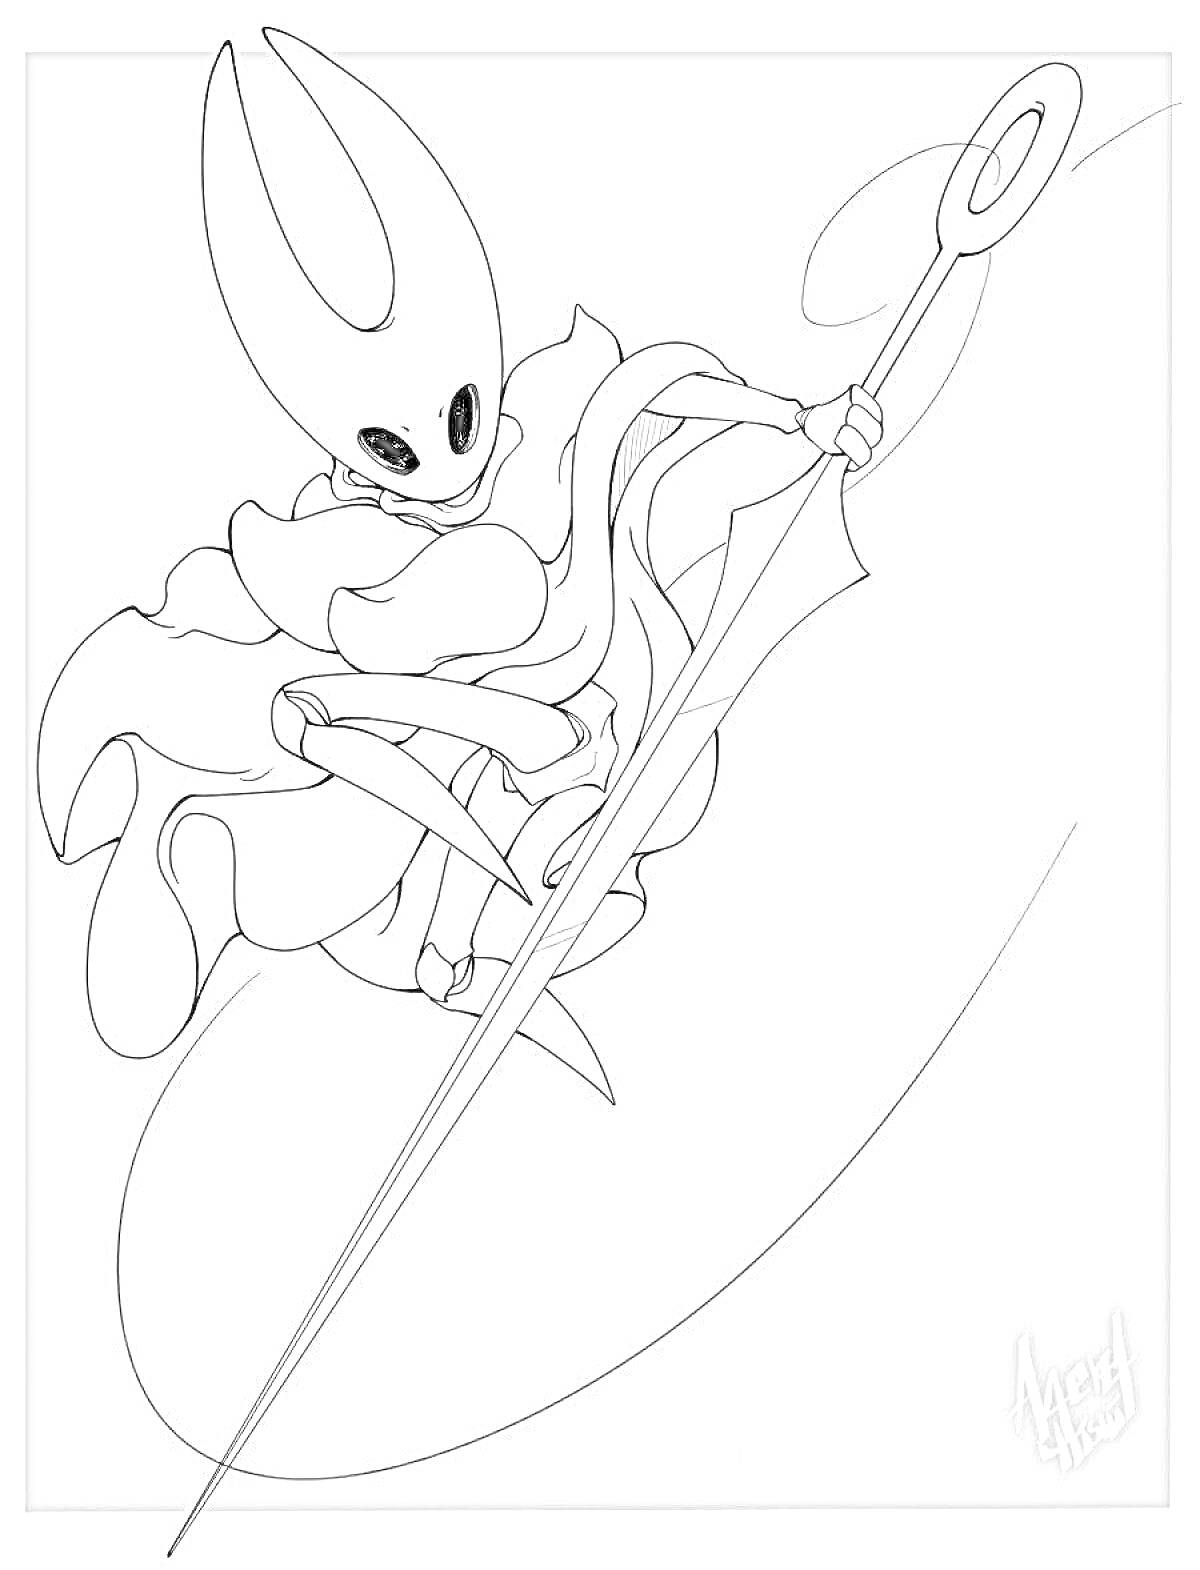 Раскраска Персонаж Hollow Knight в прыжке с длинным мечом